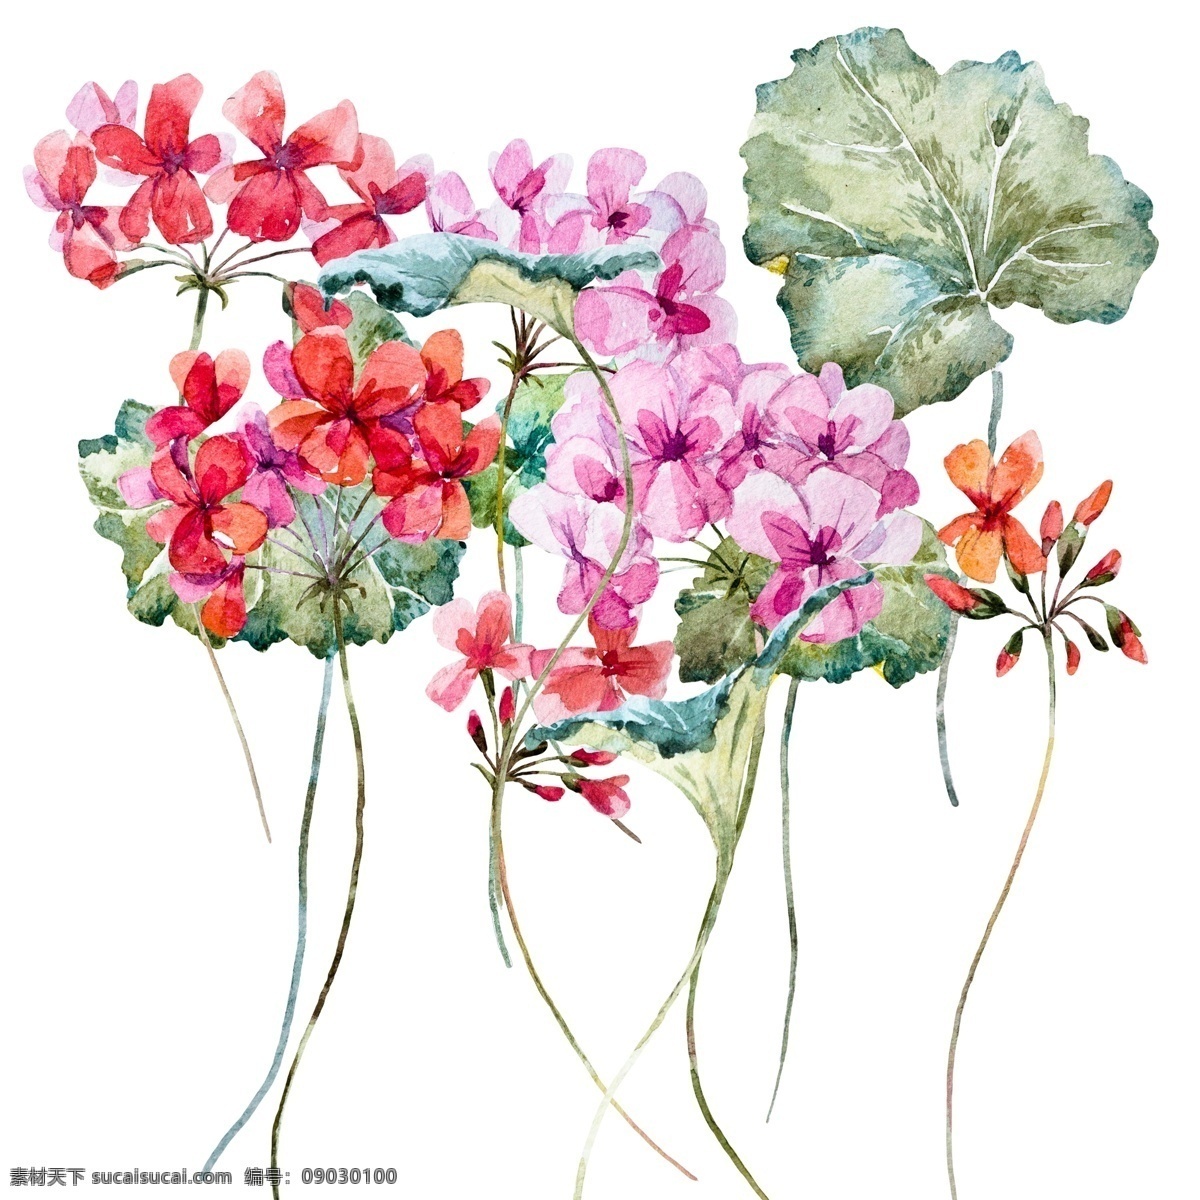 水彩 束 野生 植物 psd格式 geranium 老鹳草 手绘 水彩素材